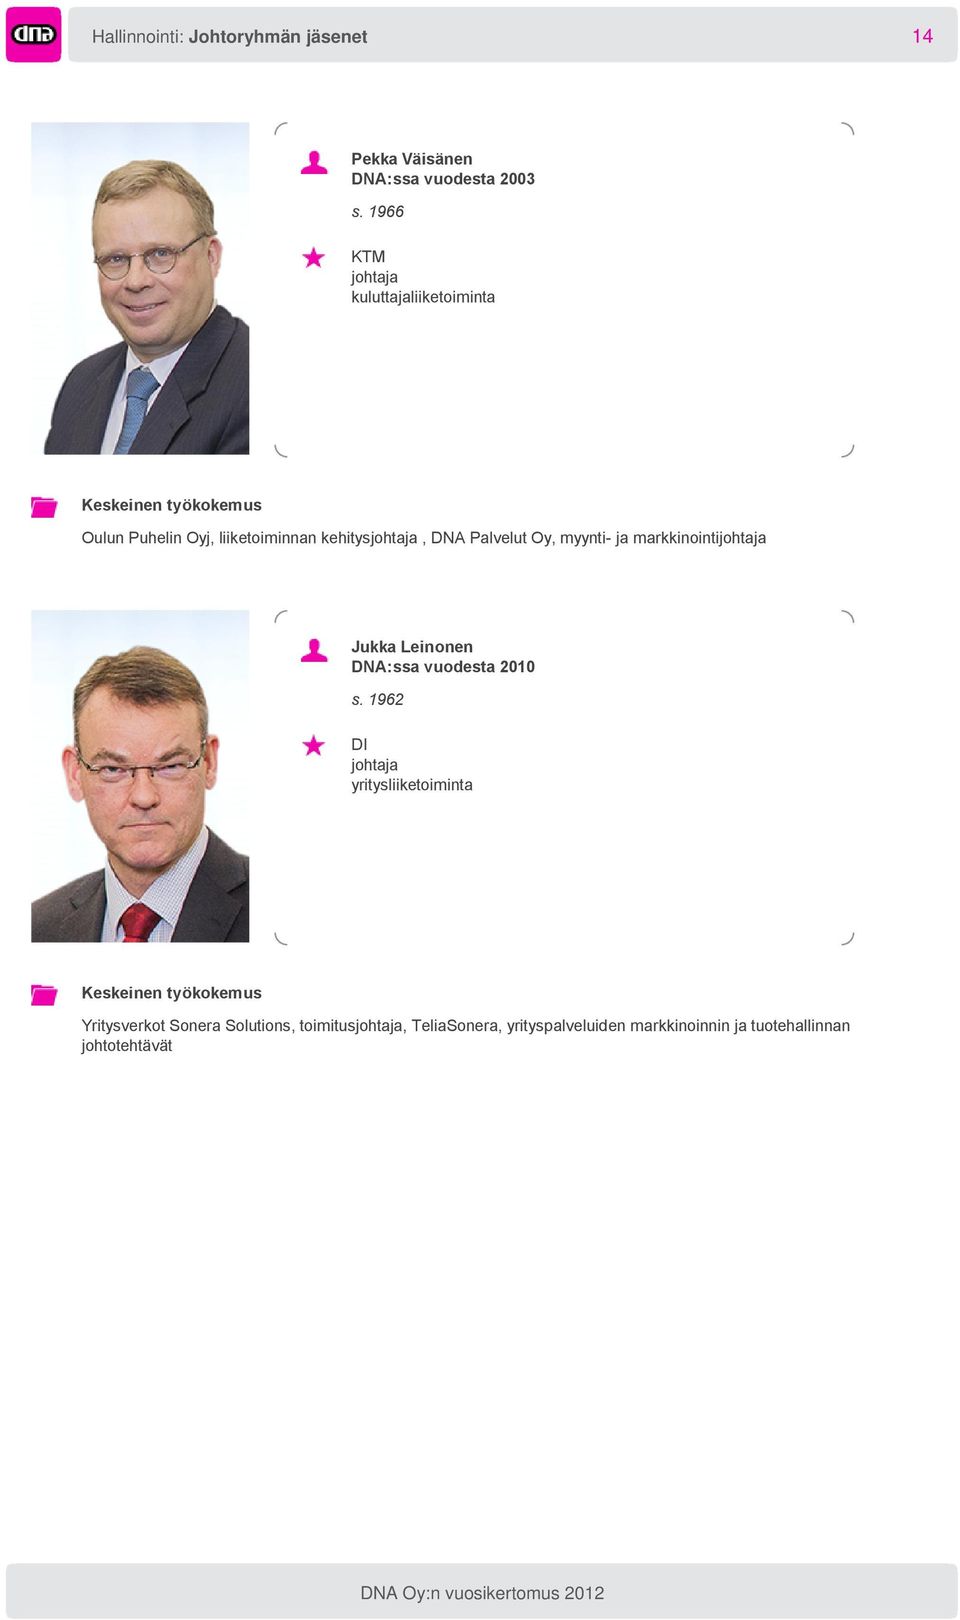 Oy, myynti- ja markkinointijohtaja Jukka Leinonen DNA:ssa vuodesta 2010 s.